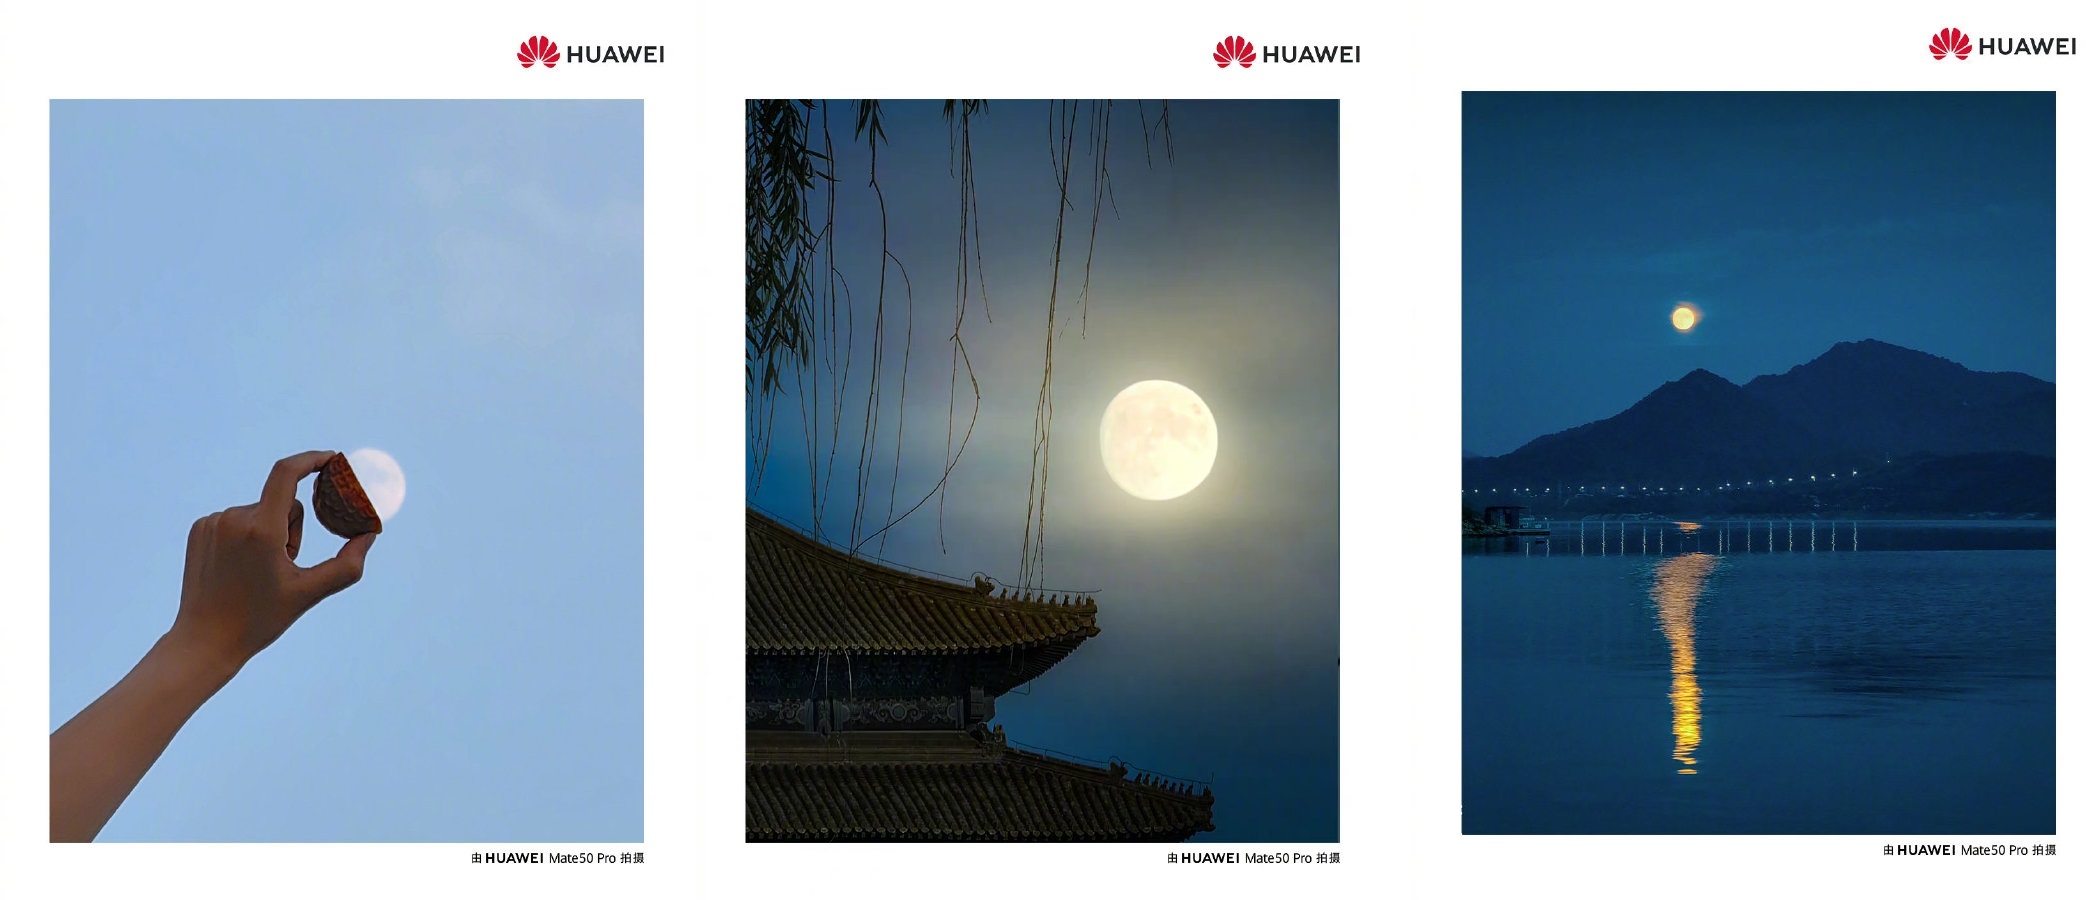 Huawei mate 50 pro камера. Смартфон Huawei Mate 50 Pro камера. Huawei Mate 50 Pro снимки камеры. Фото Луны Хуавей. Фото сделанные на Huawei Mate 50 Pro.